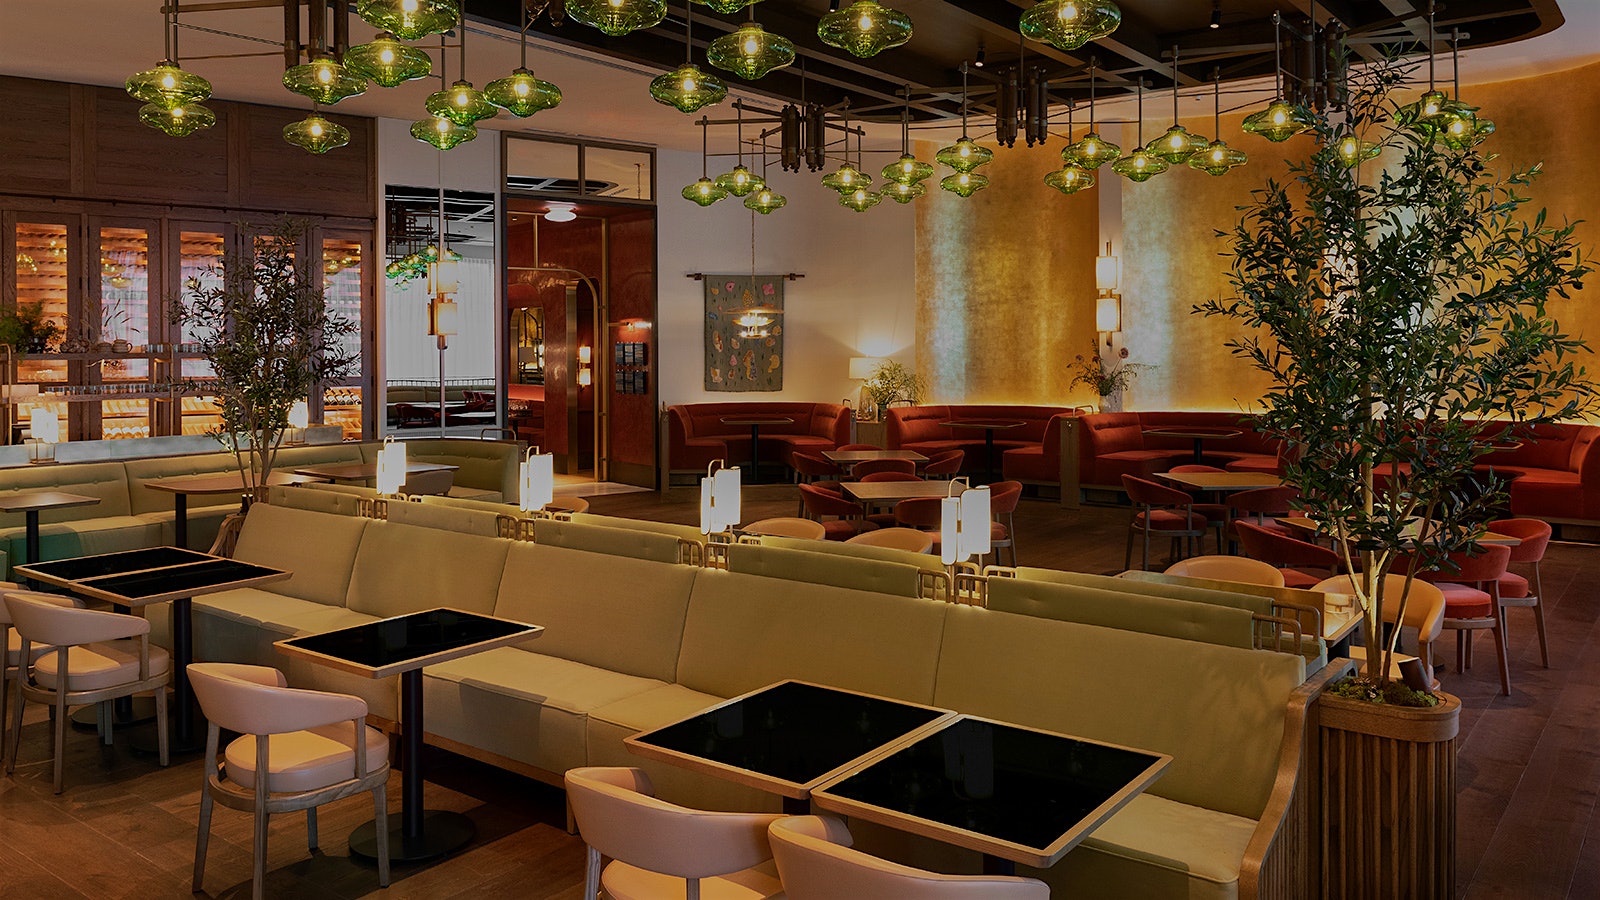   El comedor del restaurante Mara, de inspiración mediterránea, con luces de cristal verde y banquetas y sillas en tonos rojos y dorados.